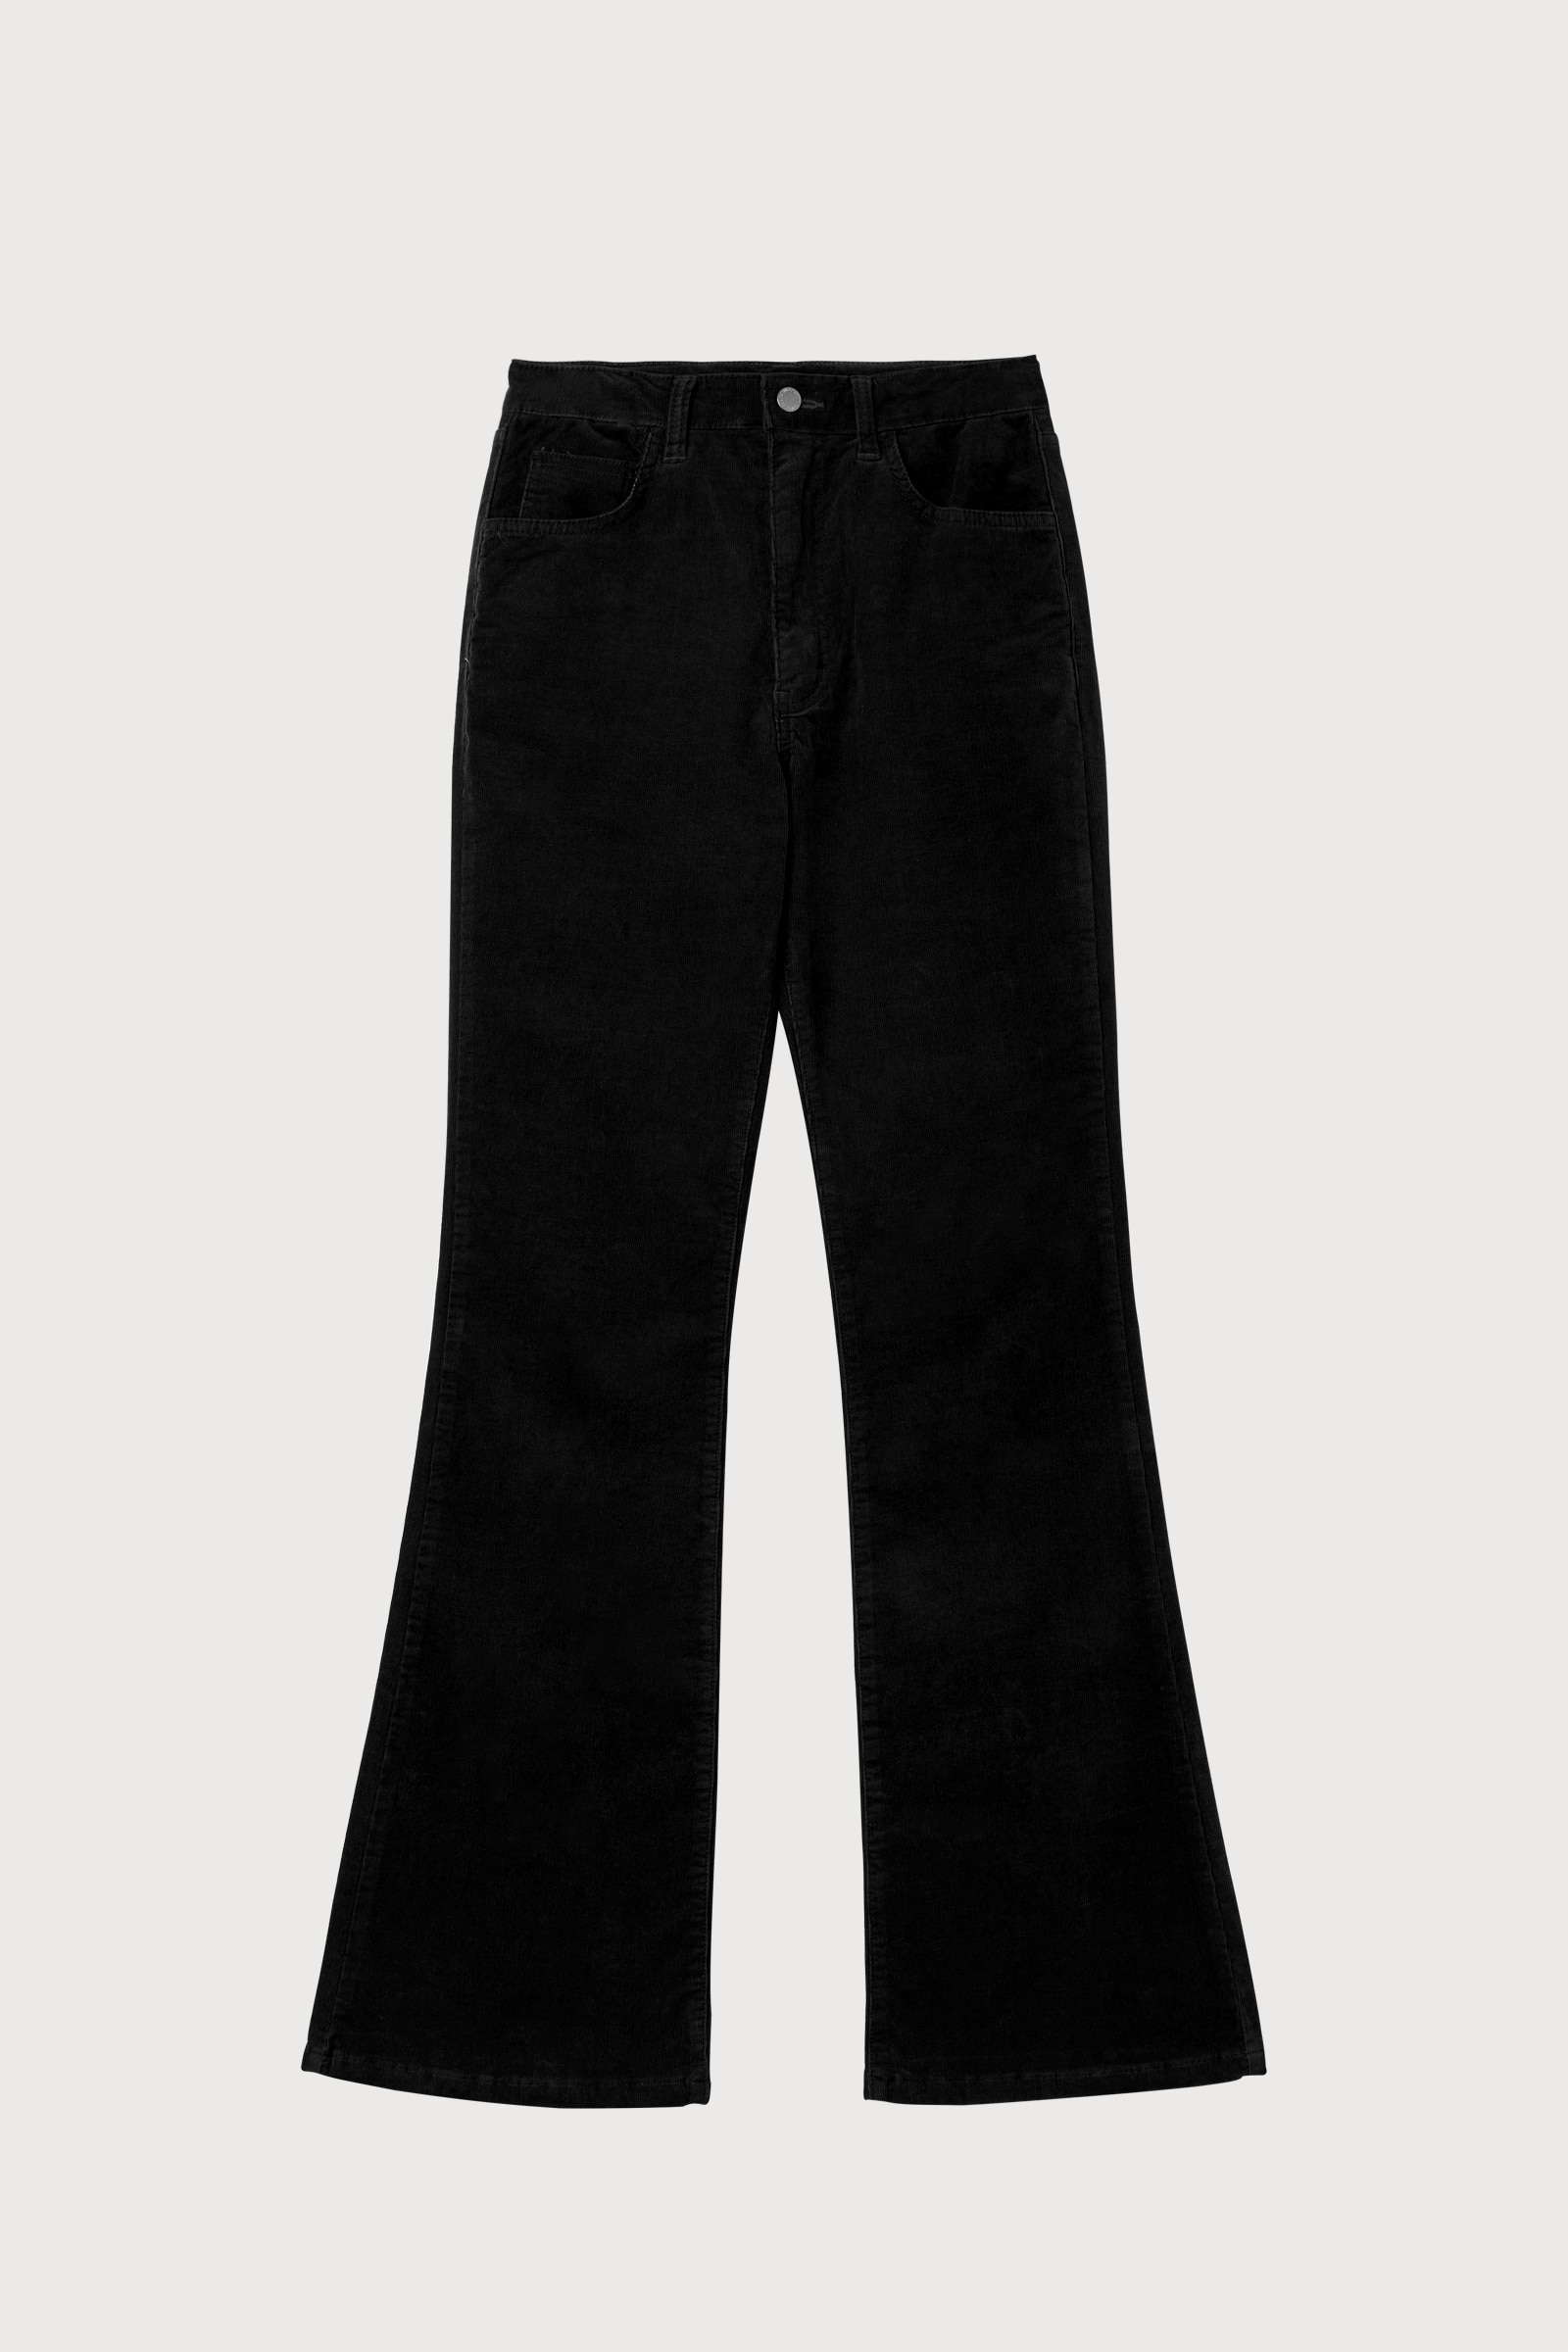 Part.4 Corduroy bootscut pants (black)